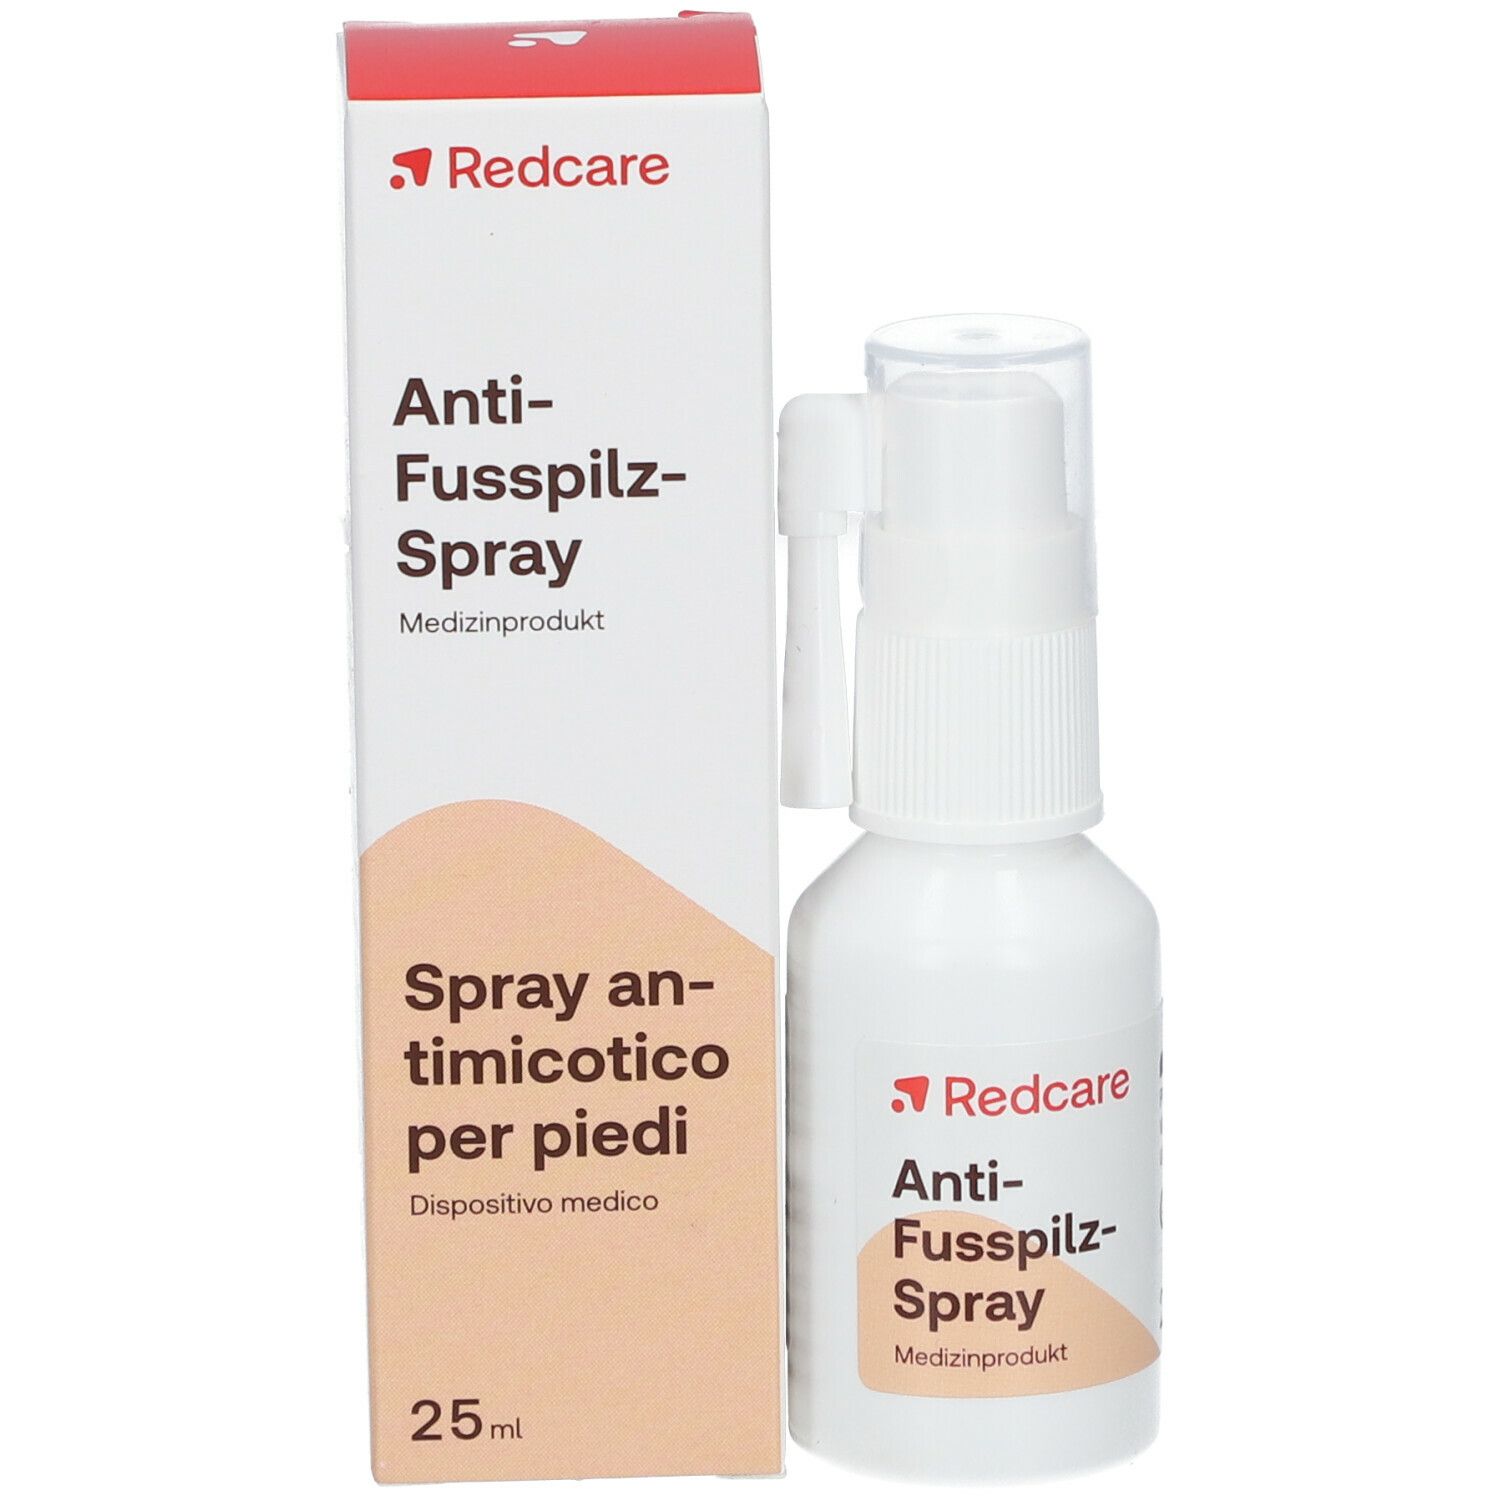 Redcare Anti-Fußpilz-Spray